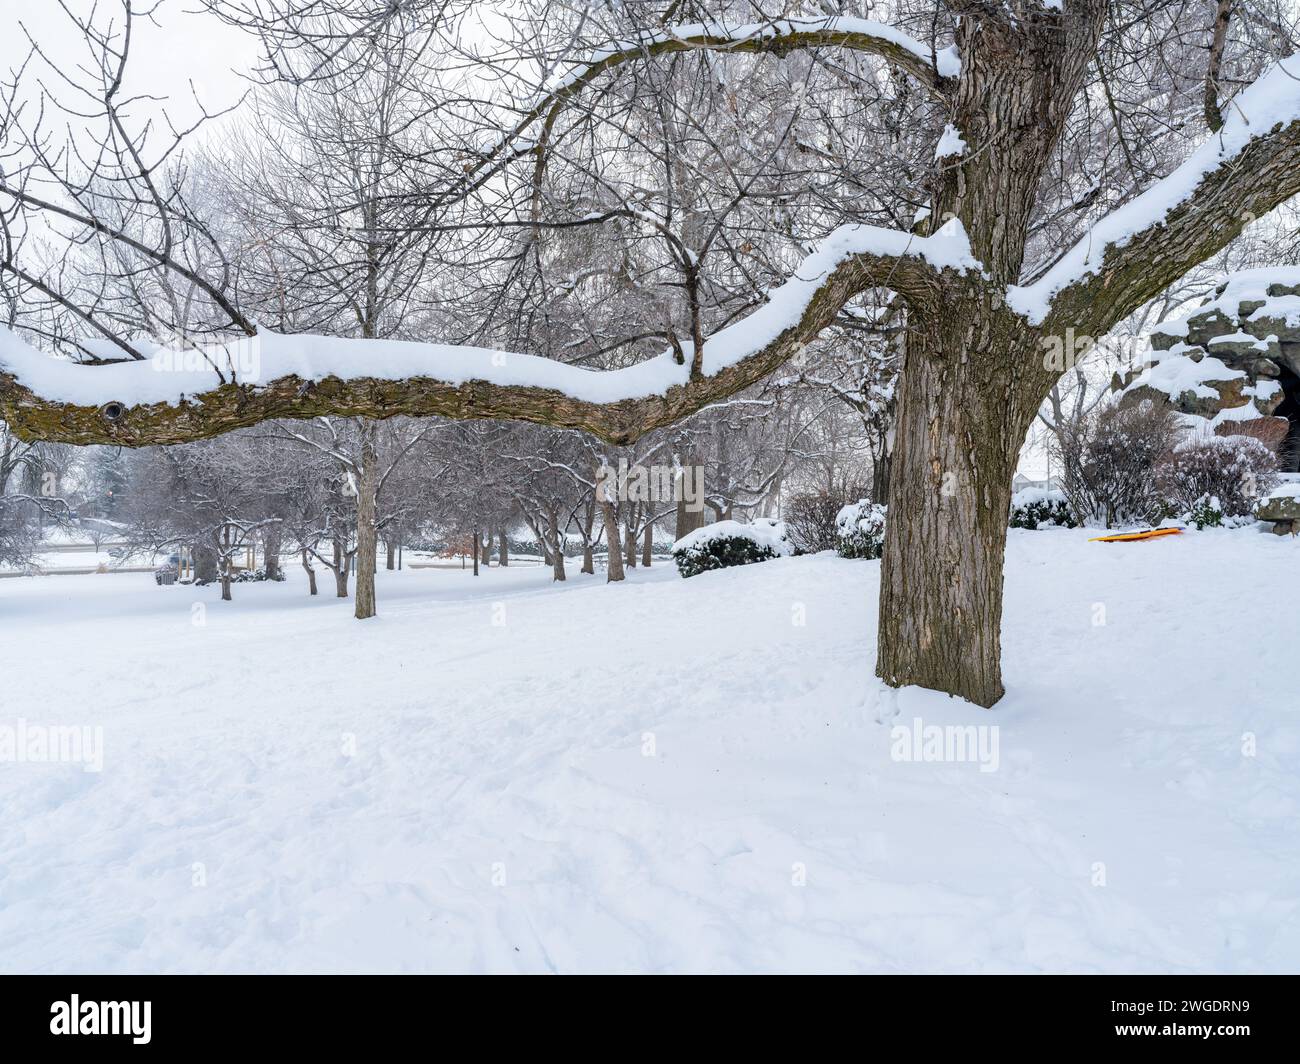 Schnee auf dem Boden und ein alter Baum in einem öffentlichen Park Stockfoto